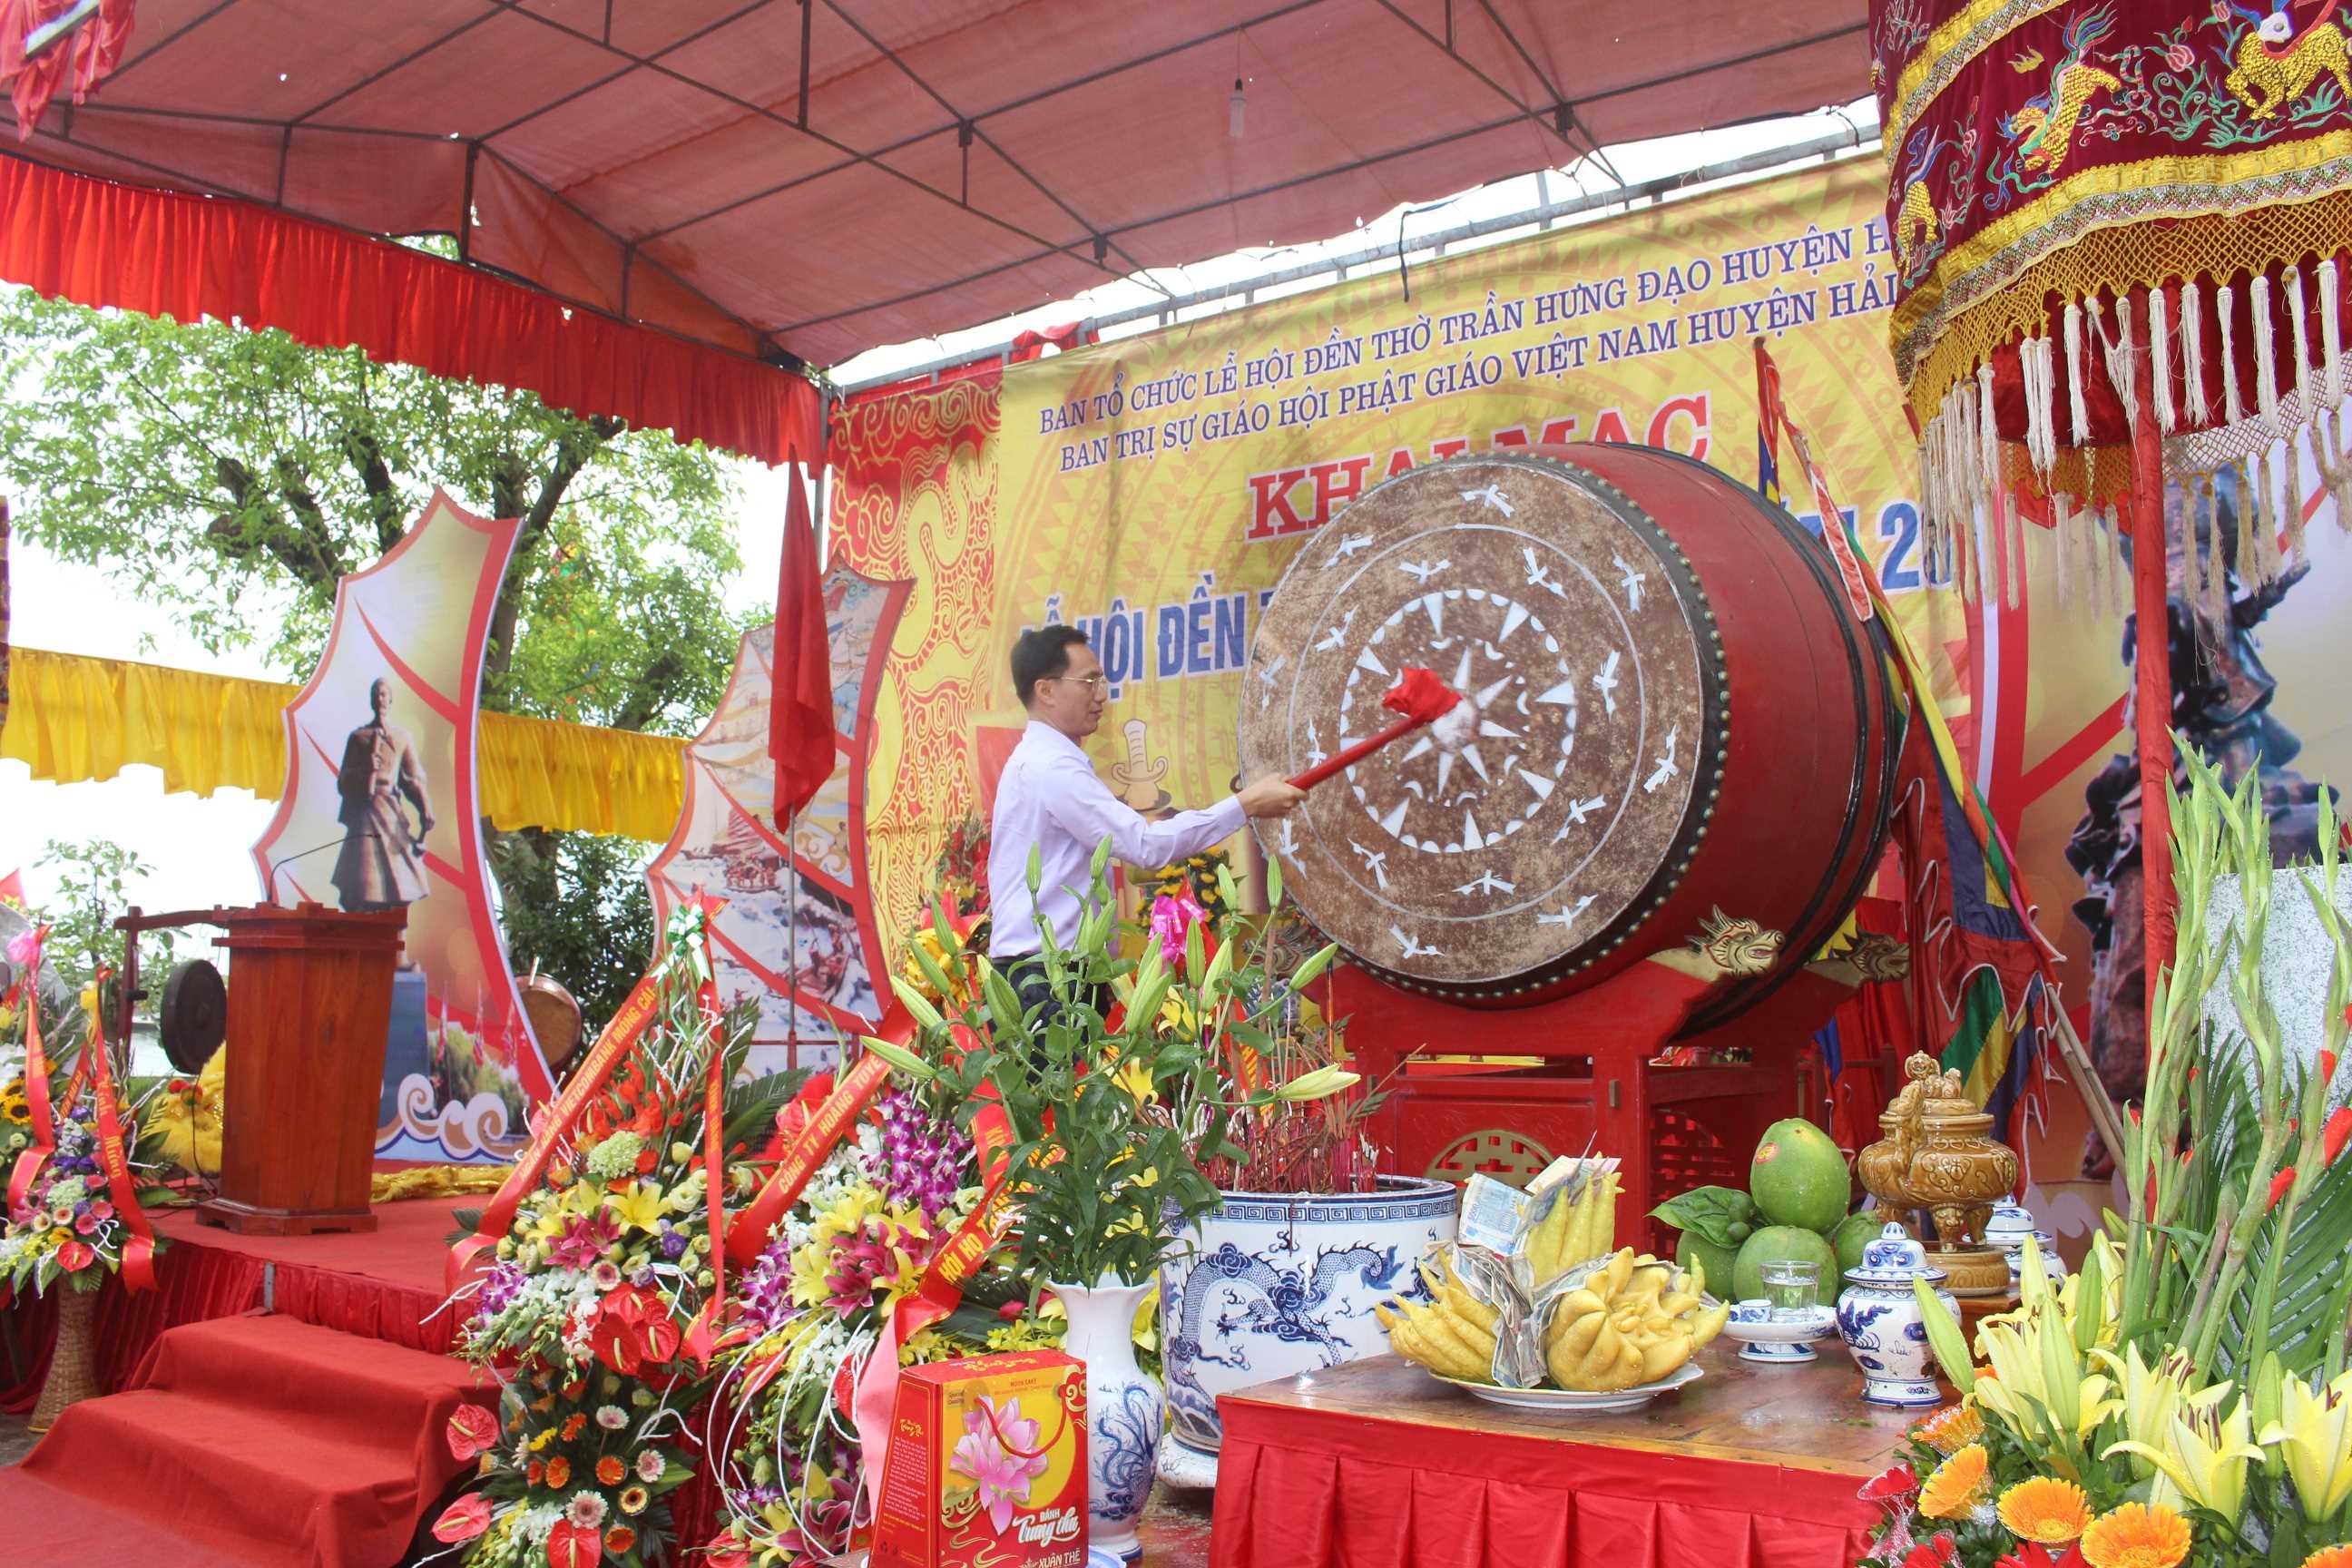 Lễ khai hội đền Trần Hưng Đạo xã Phú Hải huyện Hải Hà năm 2017